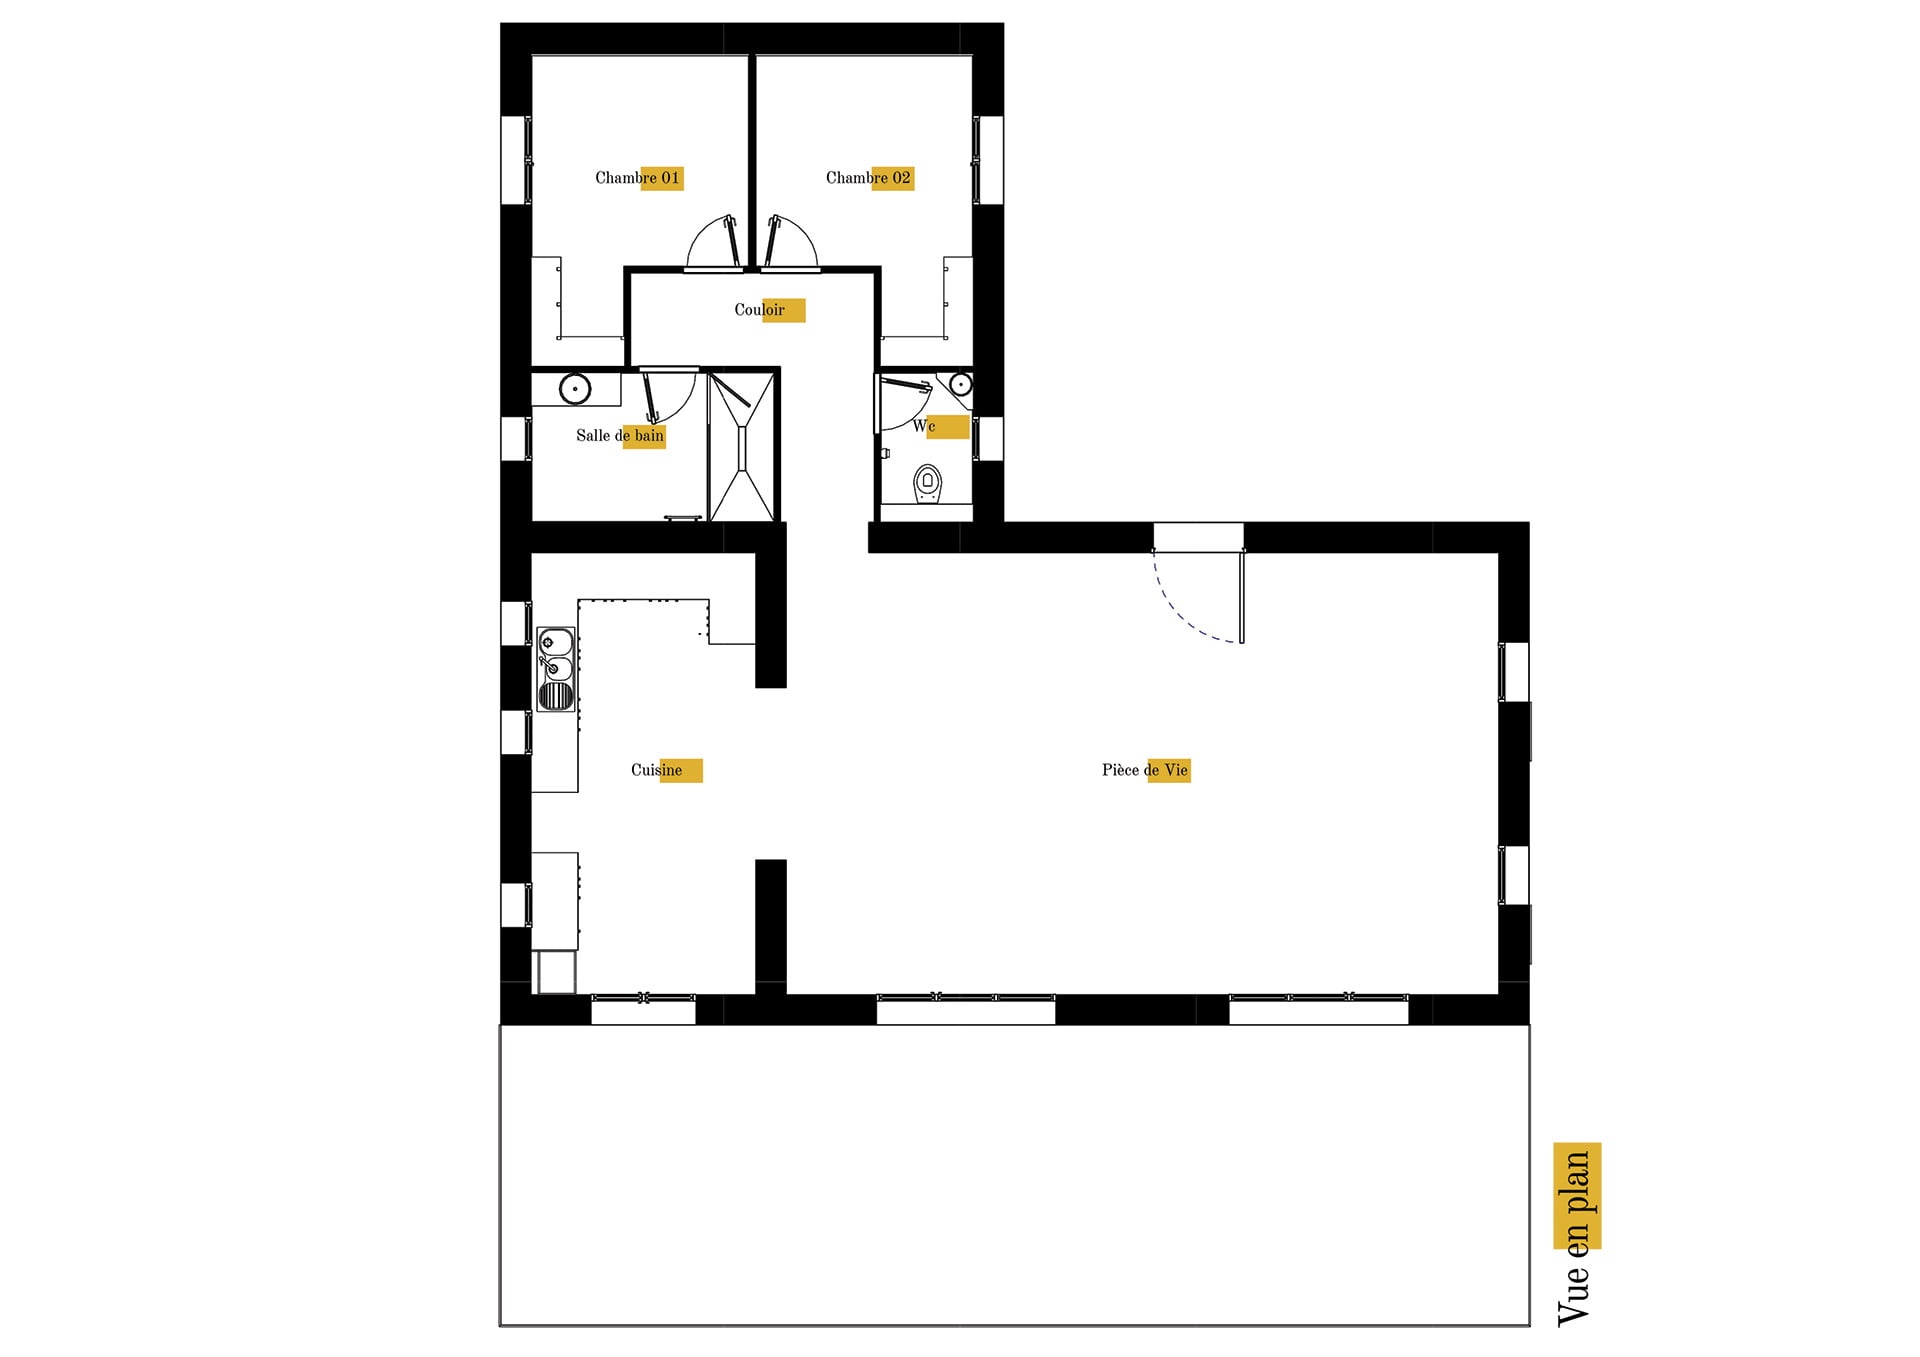 Plan gratuit à télécharger maison traditionnelle provençale / 115m² / T3 / plain-pied / piscine / toit 2 pentes. Collection Persée, maison Mu - Vue en Plan